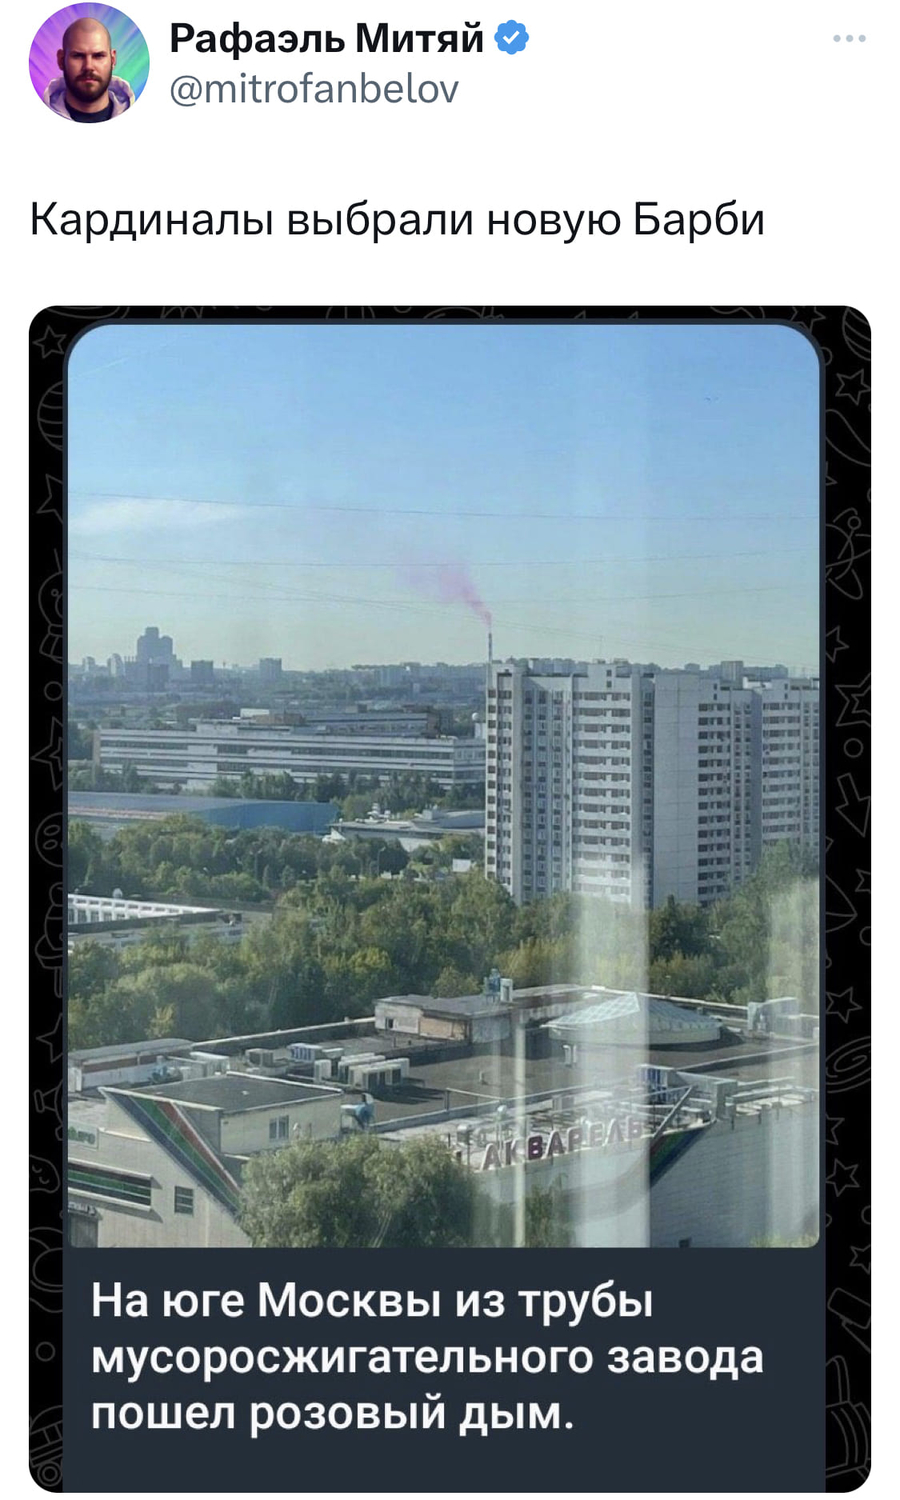 Кардиналы выбрали новую Барби.
Новость: На юге Москвы из трубы мусоросжигательного завода пошел розовый дым.